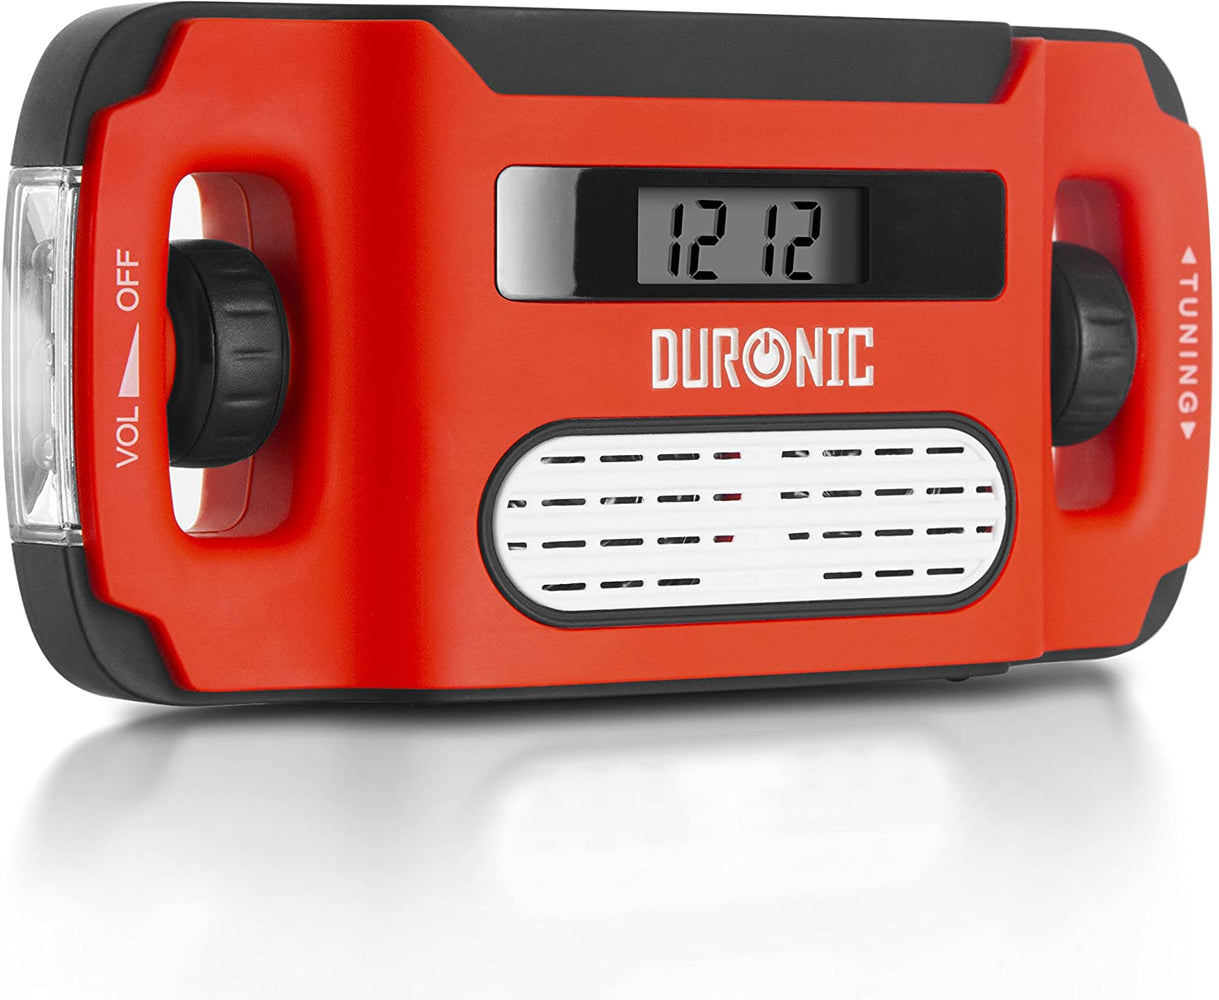 Duronic Apex Radio AM/FM – Ricarica solare, USB o dinamo – torcia – Jack  per cuffie e funzione sveglia – Portatile con display digitale  retroillumina— duronic-it